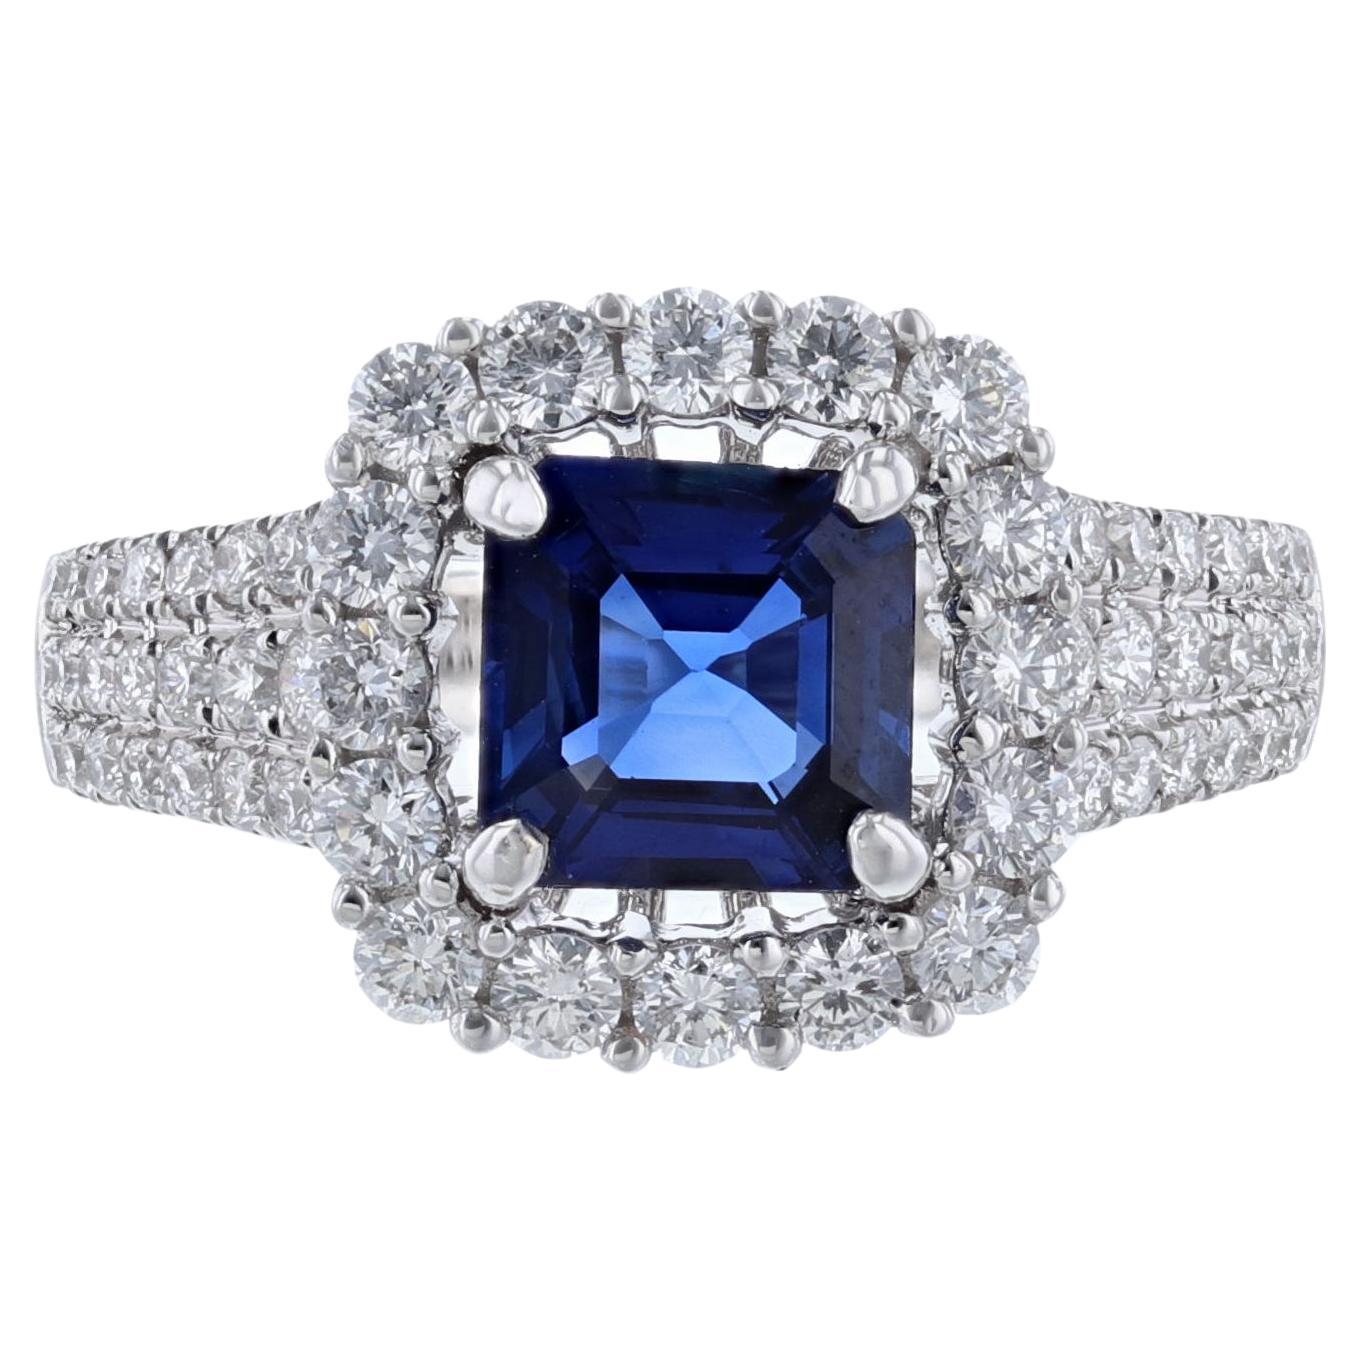 18K White Gold GIA Certified Asscher Cut Blue Sapphire Diamond Ring